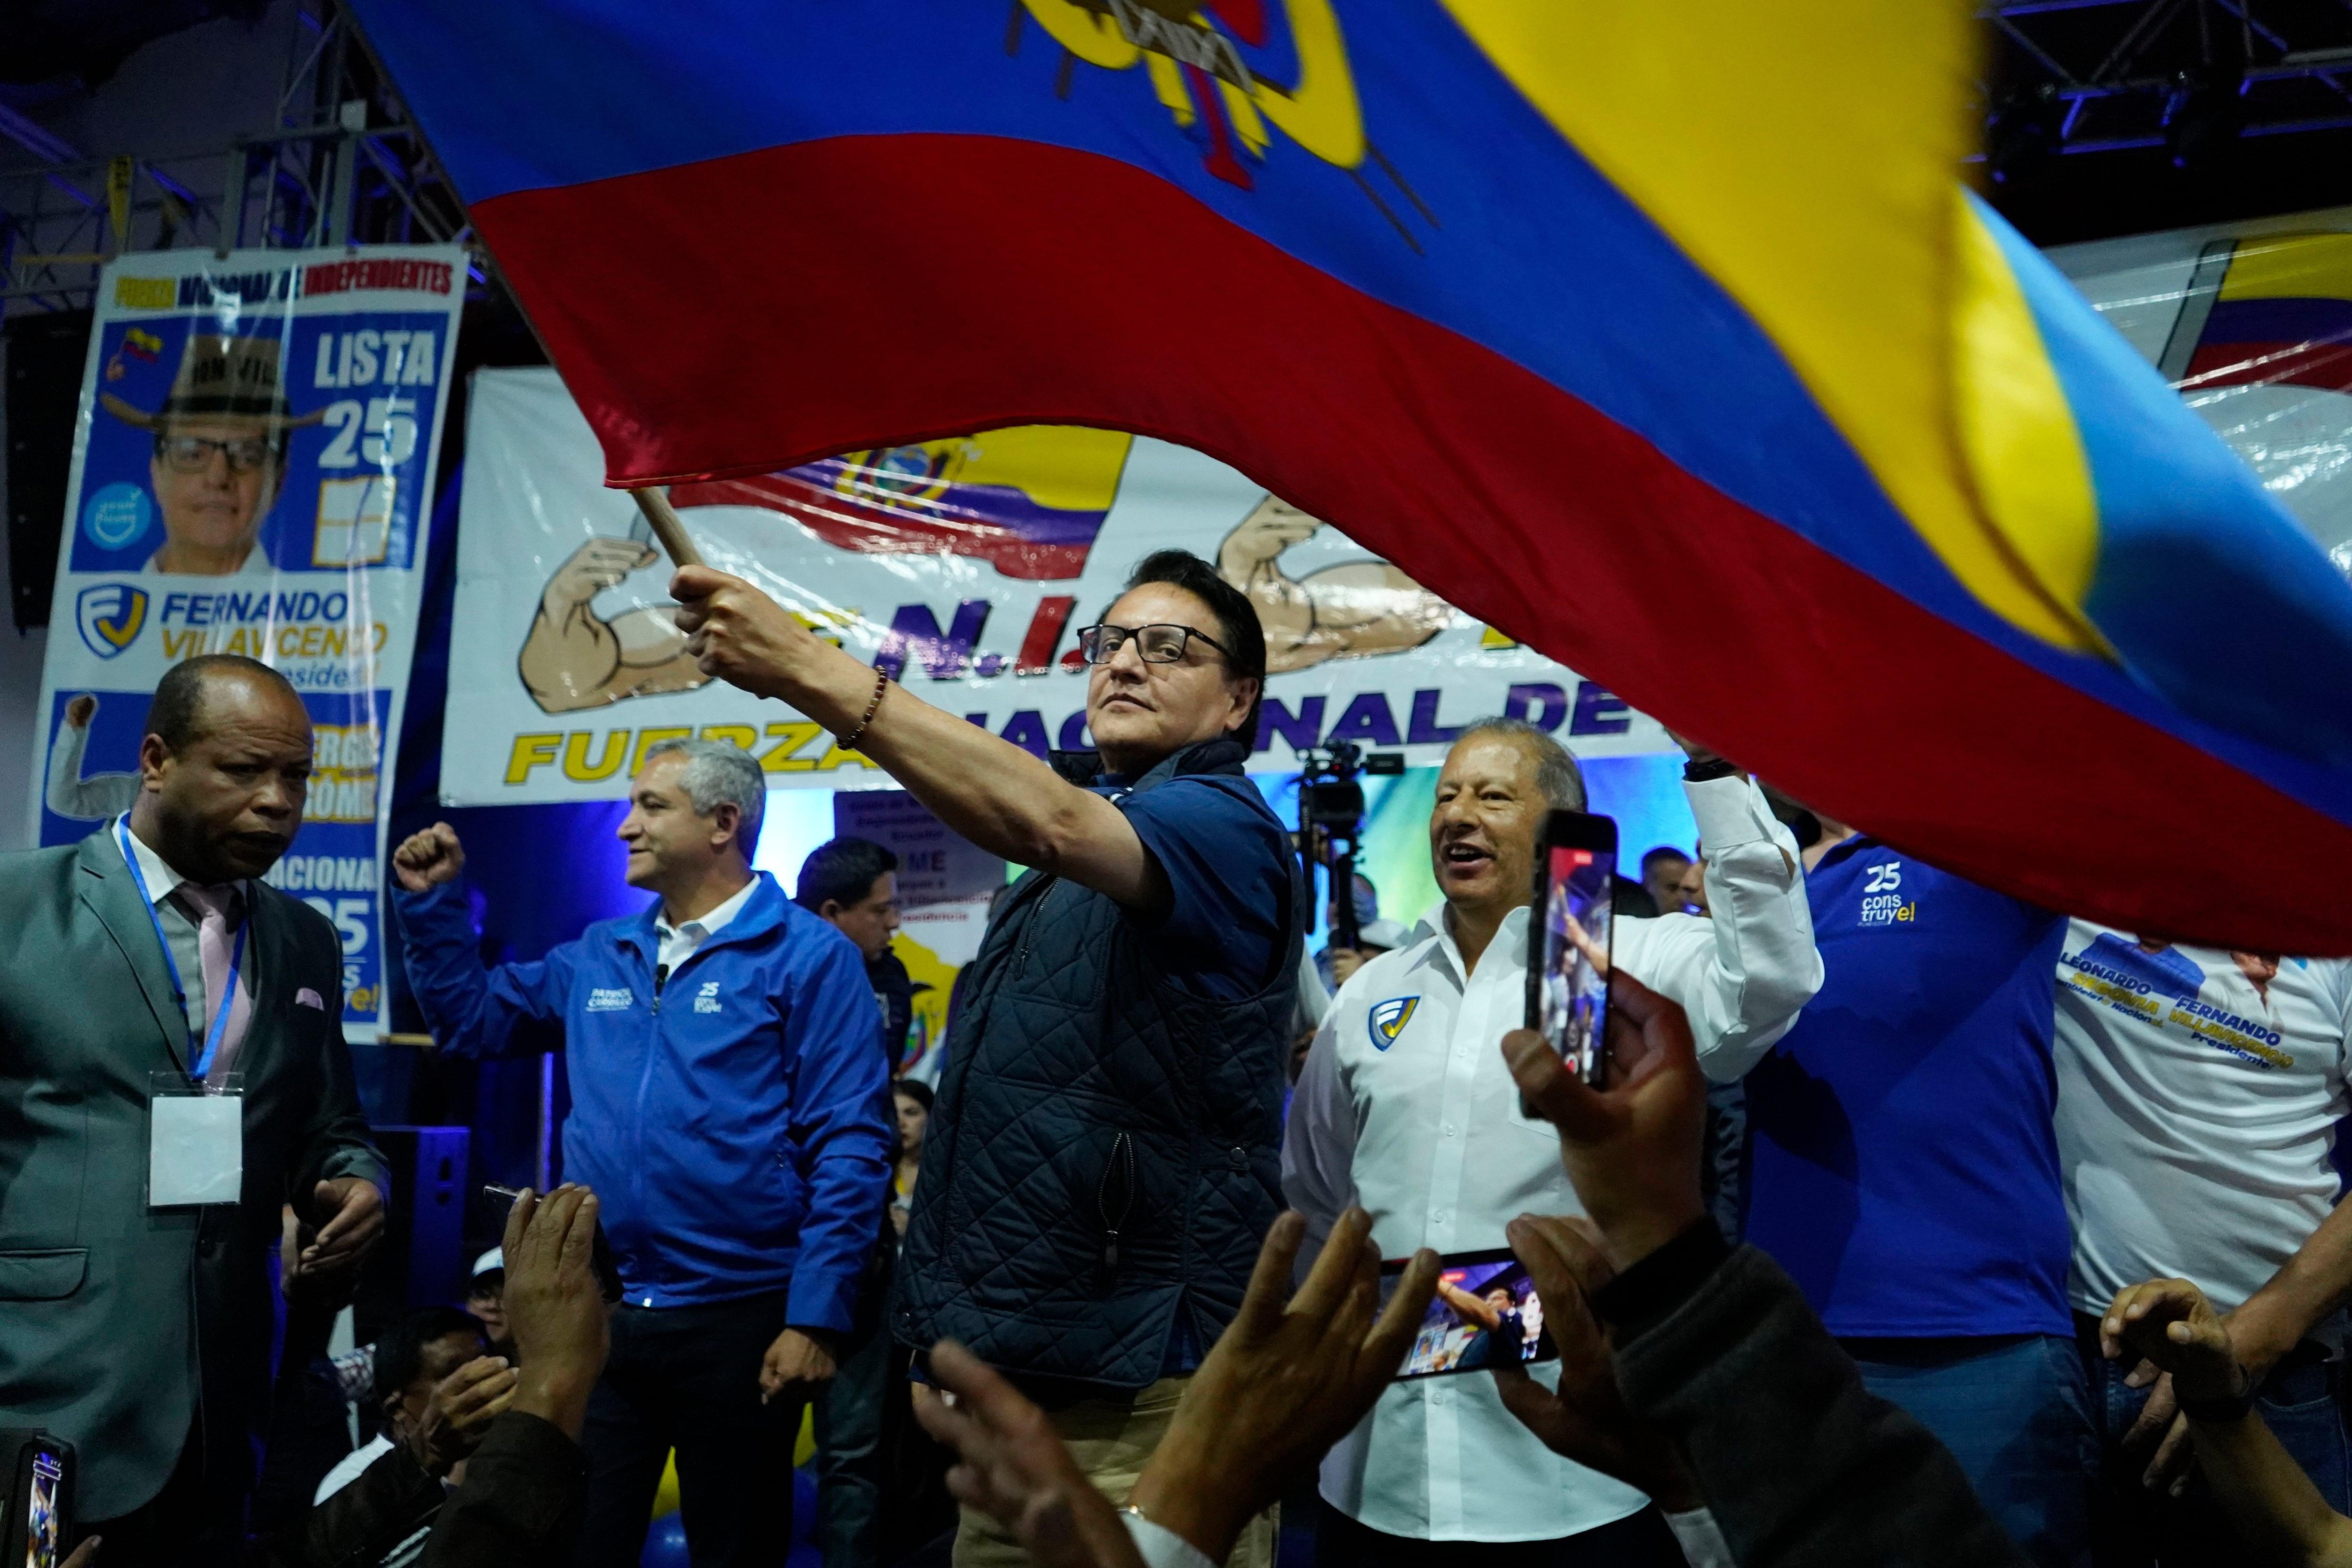 El candidato presidencial Fernando Villavicencio ondea una bandera de Ecuador en un acto de campaña en un colegio minutos antes de ser asesinado a tiros a la salida de ese recinto educativo en Quito, Ecuador. (API vía AP)